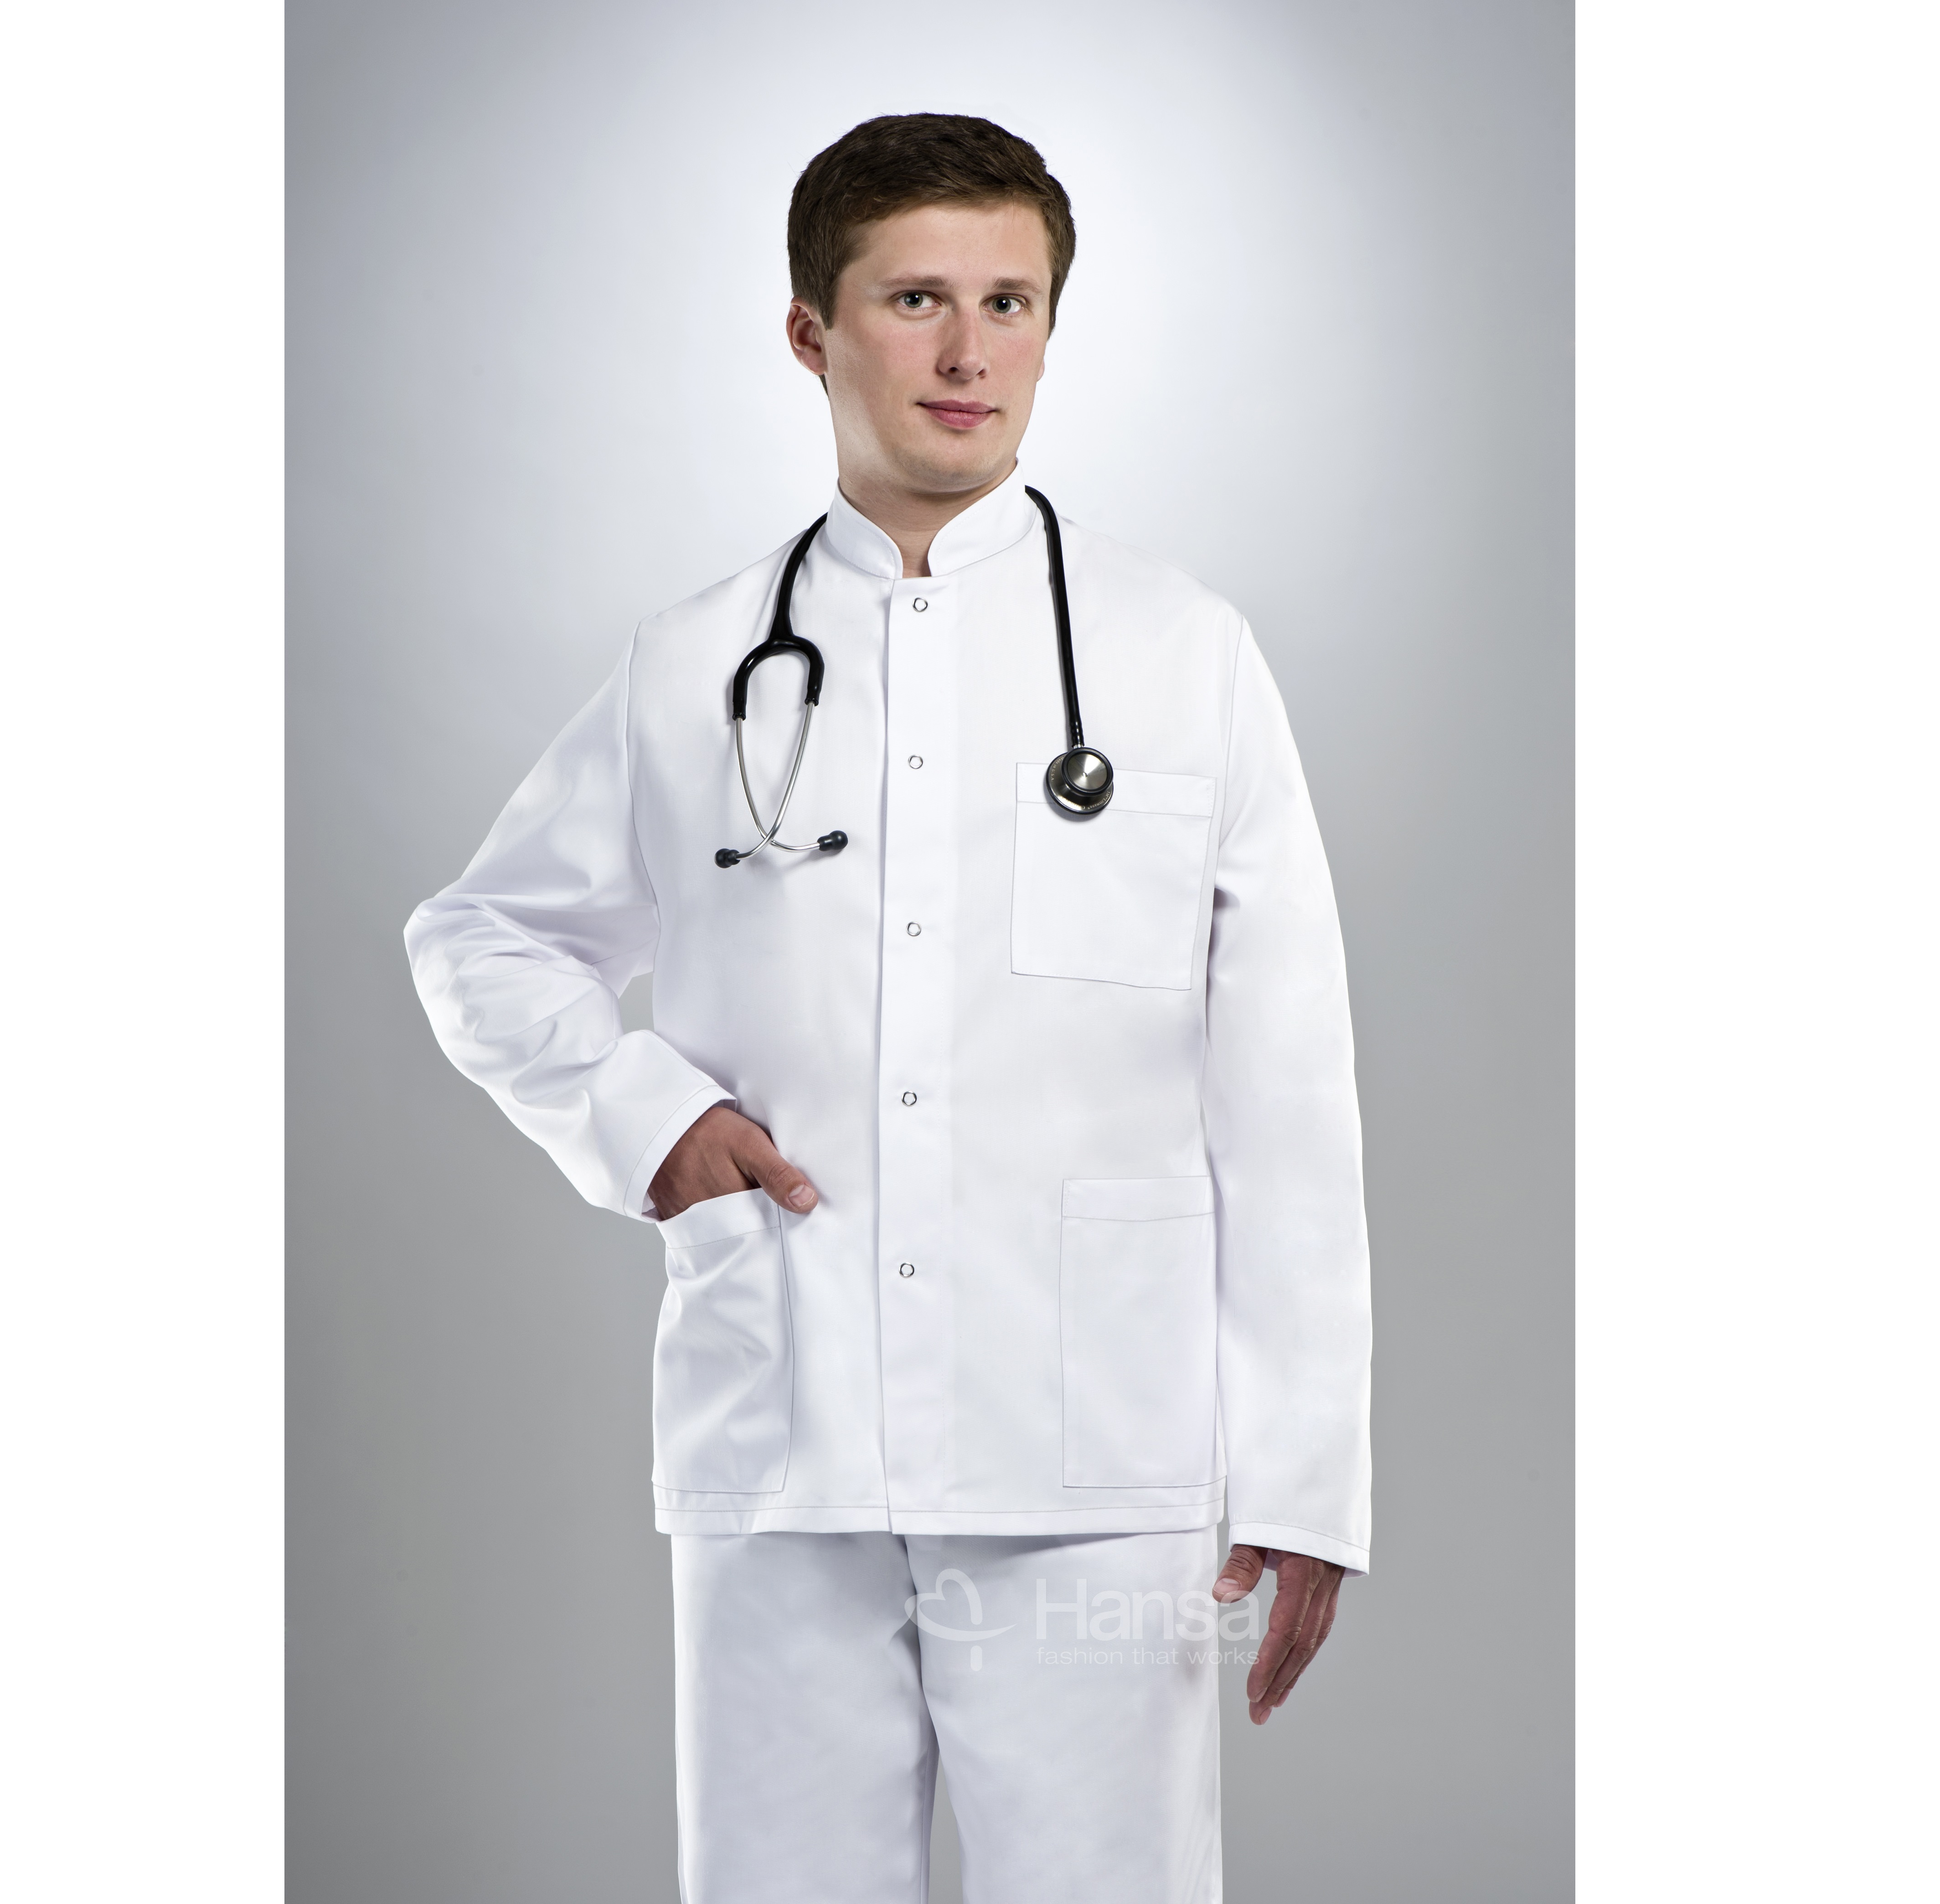 Bluzy, marynarki, żakiety medyczne Hansa 3002